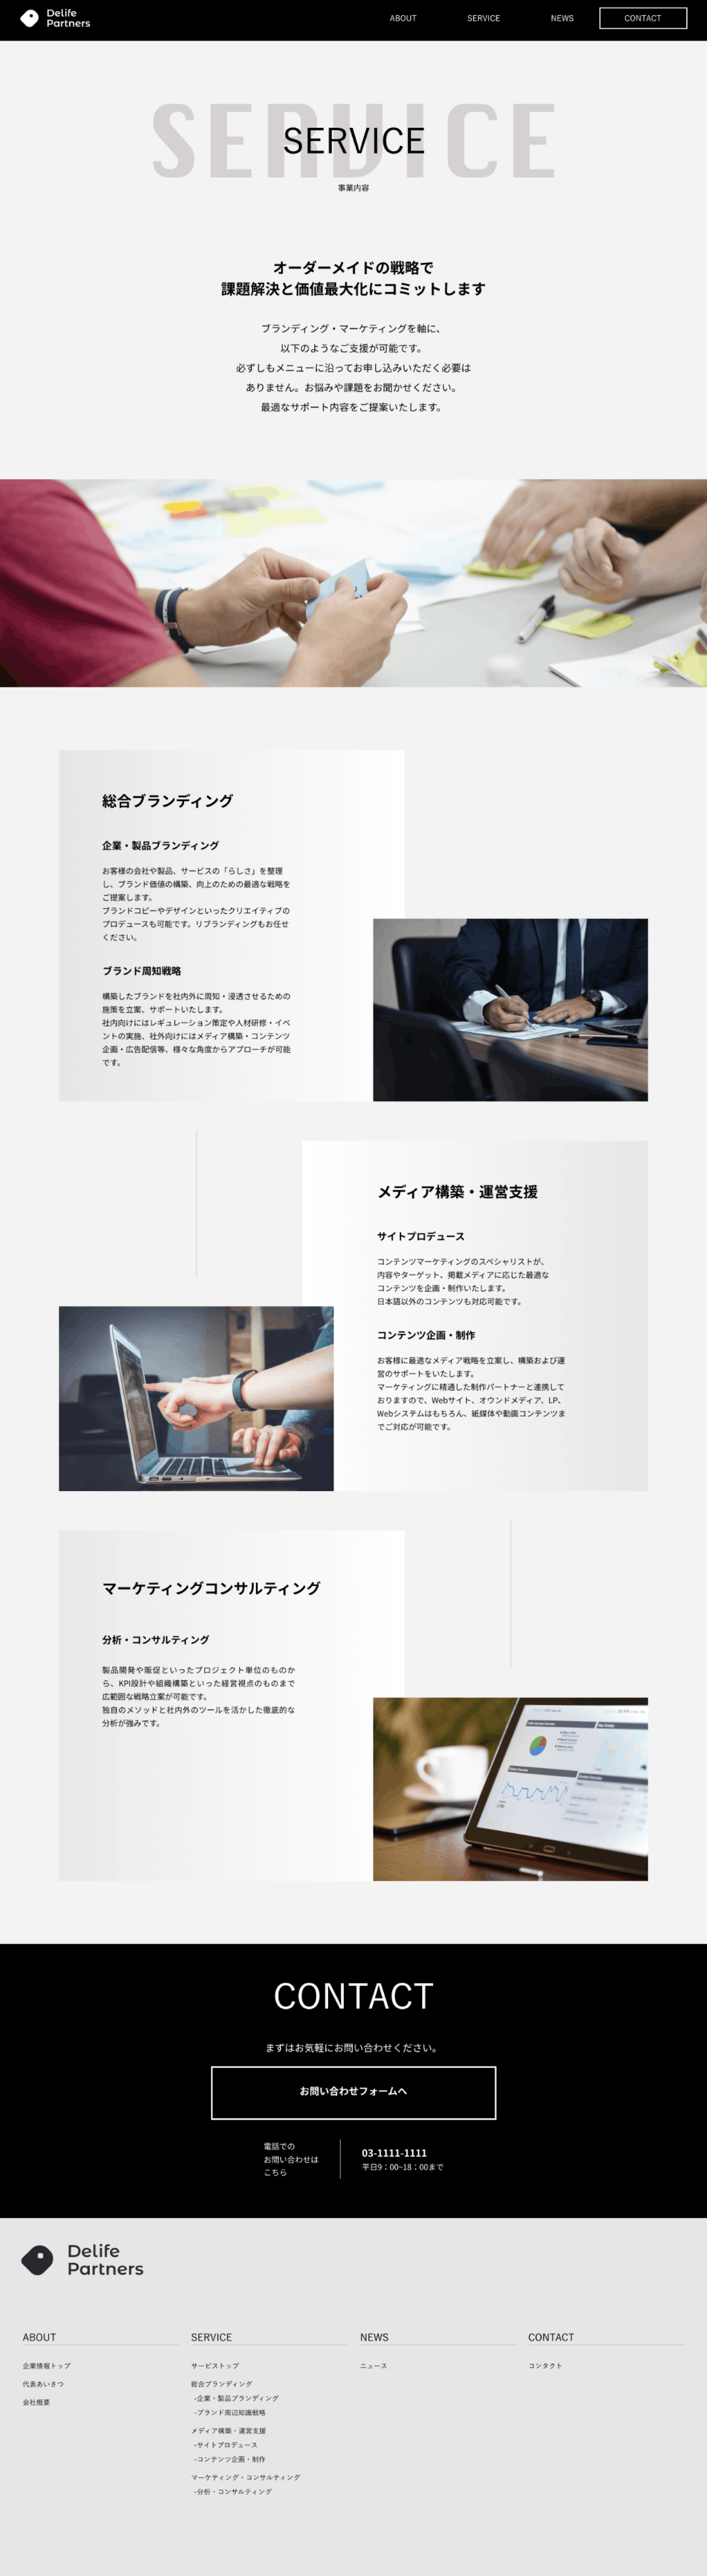 【コーポレートサイト】中小企業向けコンサルティング会社-4